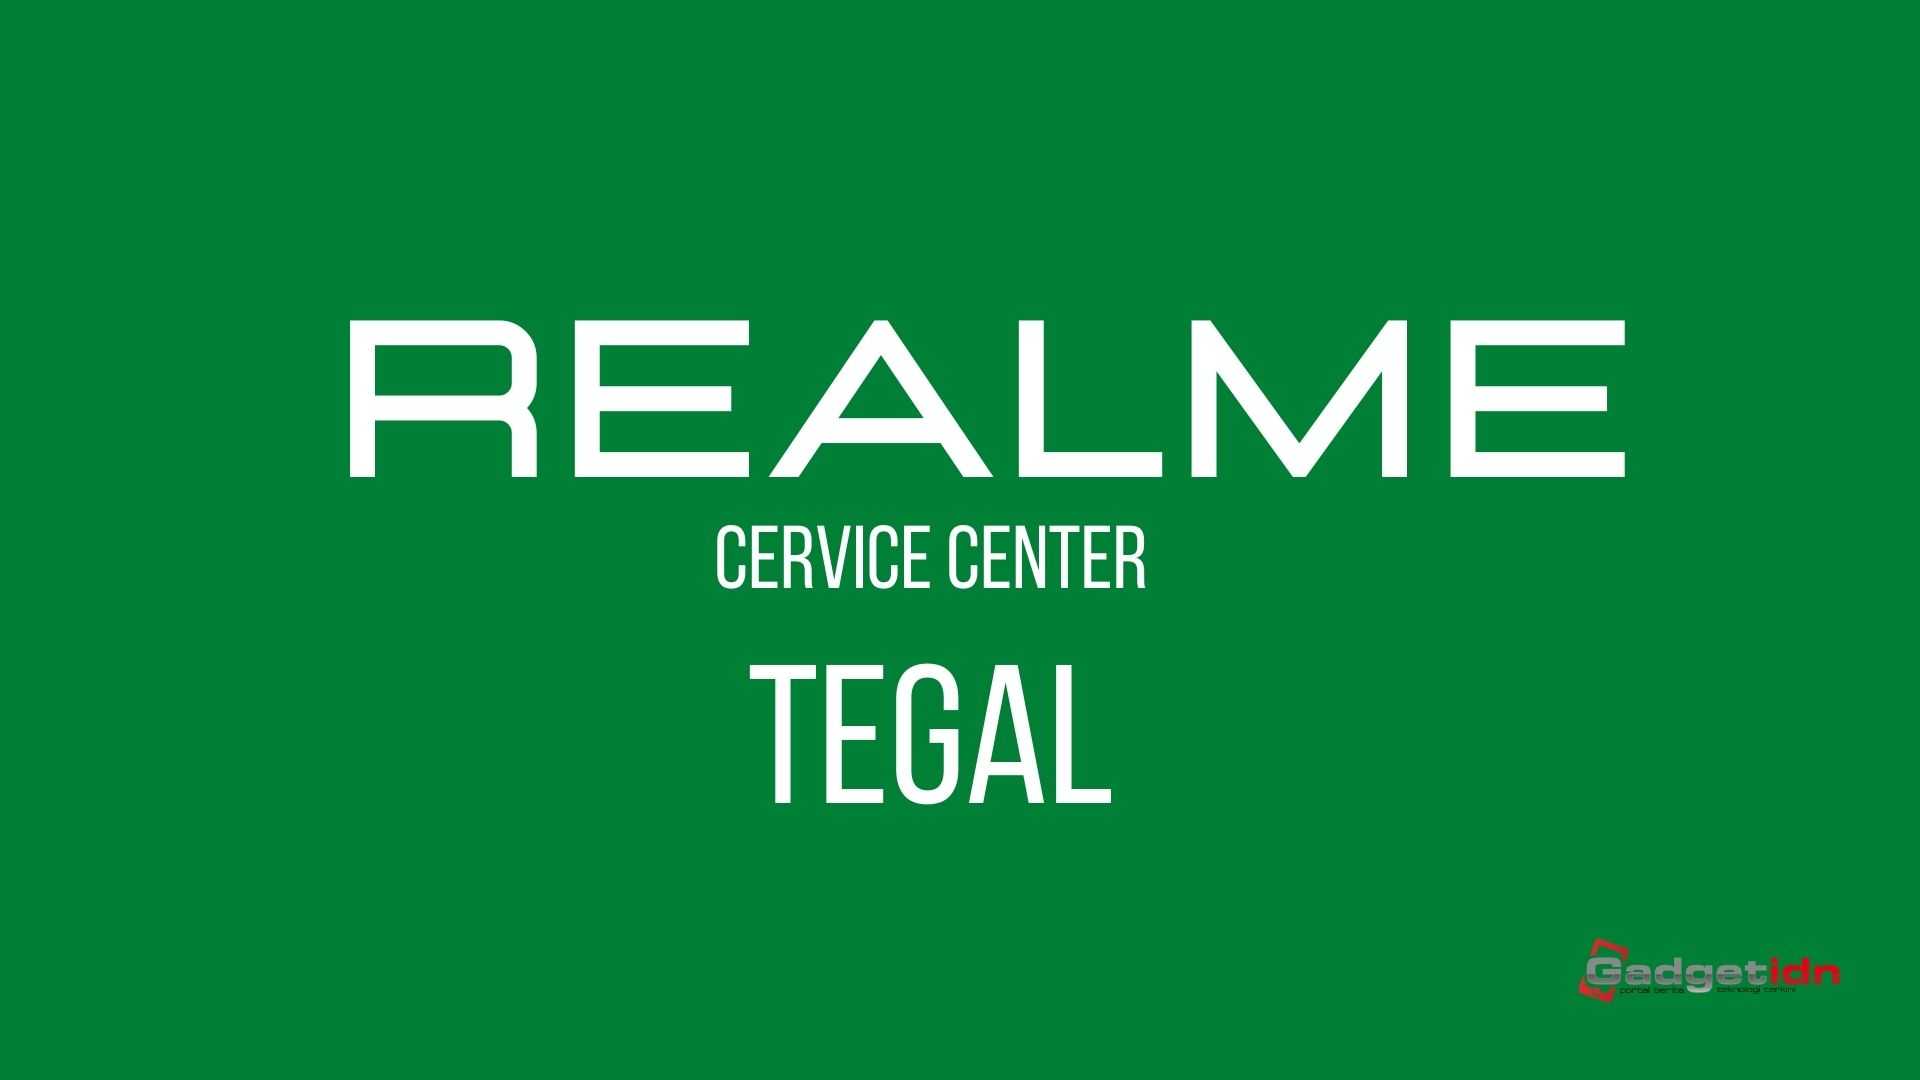 service center realme tegal